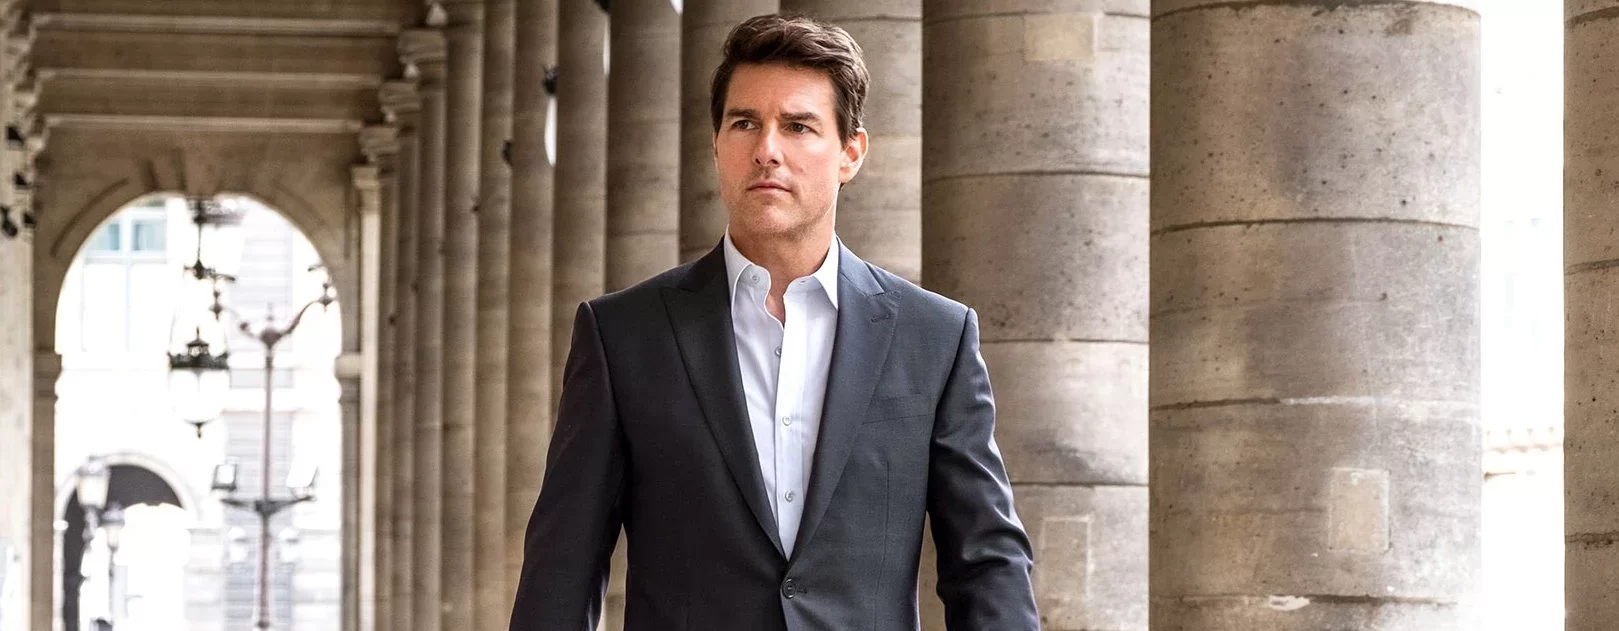 Depois de enfrentar a covid-19, Tom Cruise terá um ajuste de contas no próximo Missão: Impossível (crédito: divulgação / Paramount Pictures)